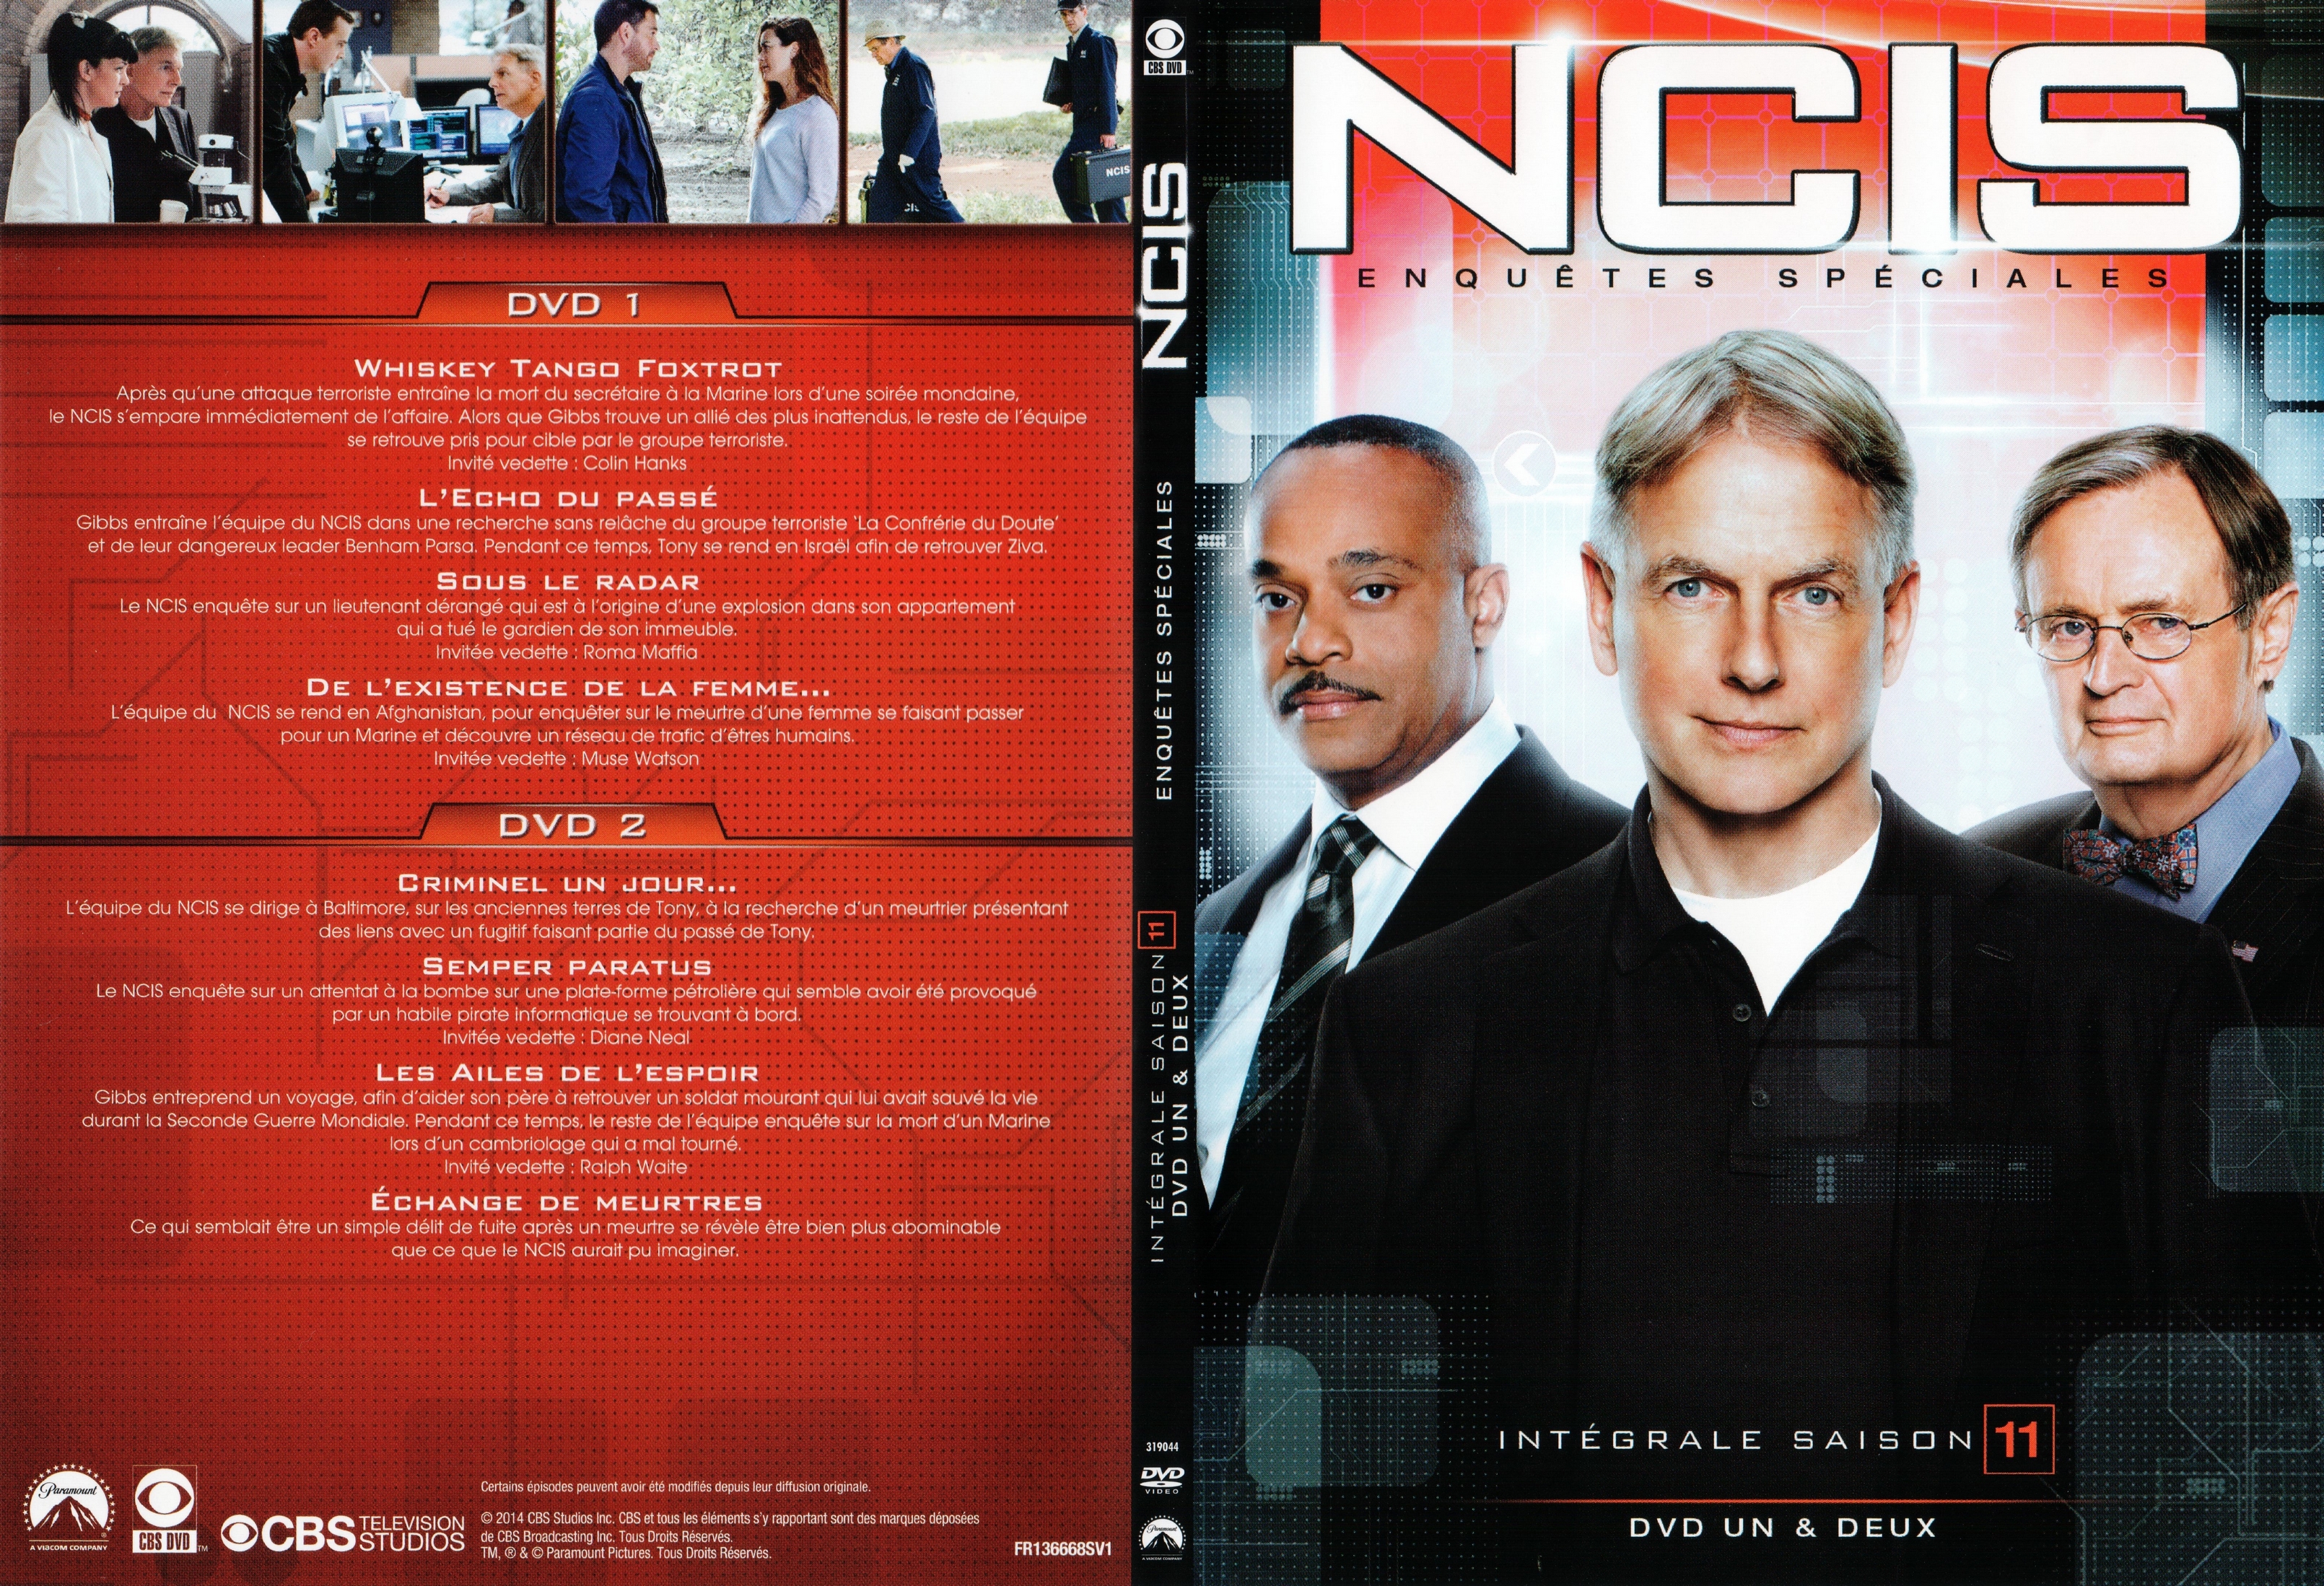 Jaquette DVD NCIS saison 11 DVD 1